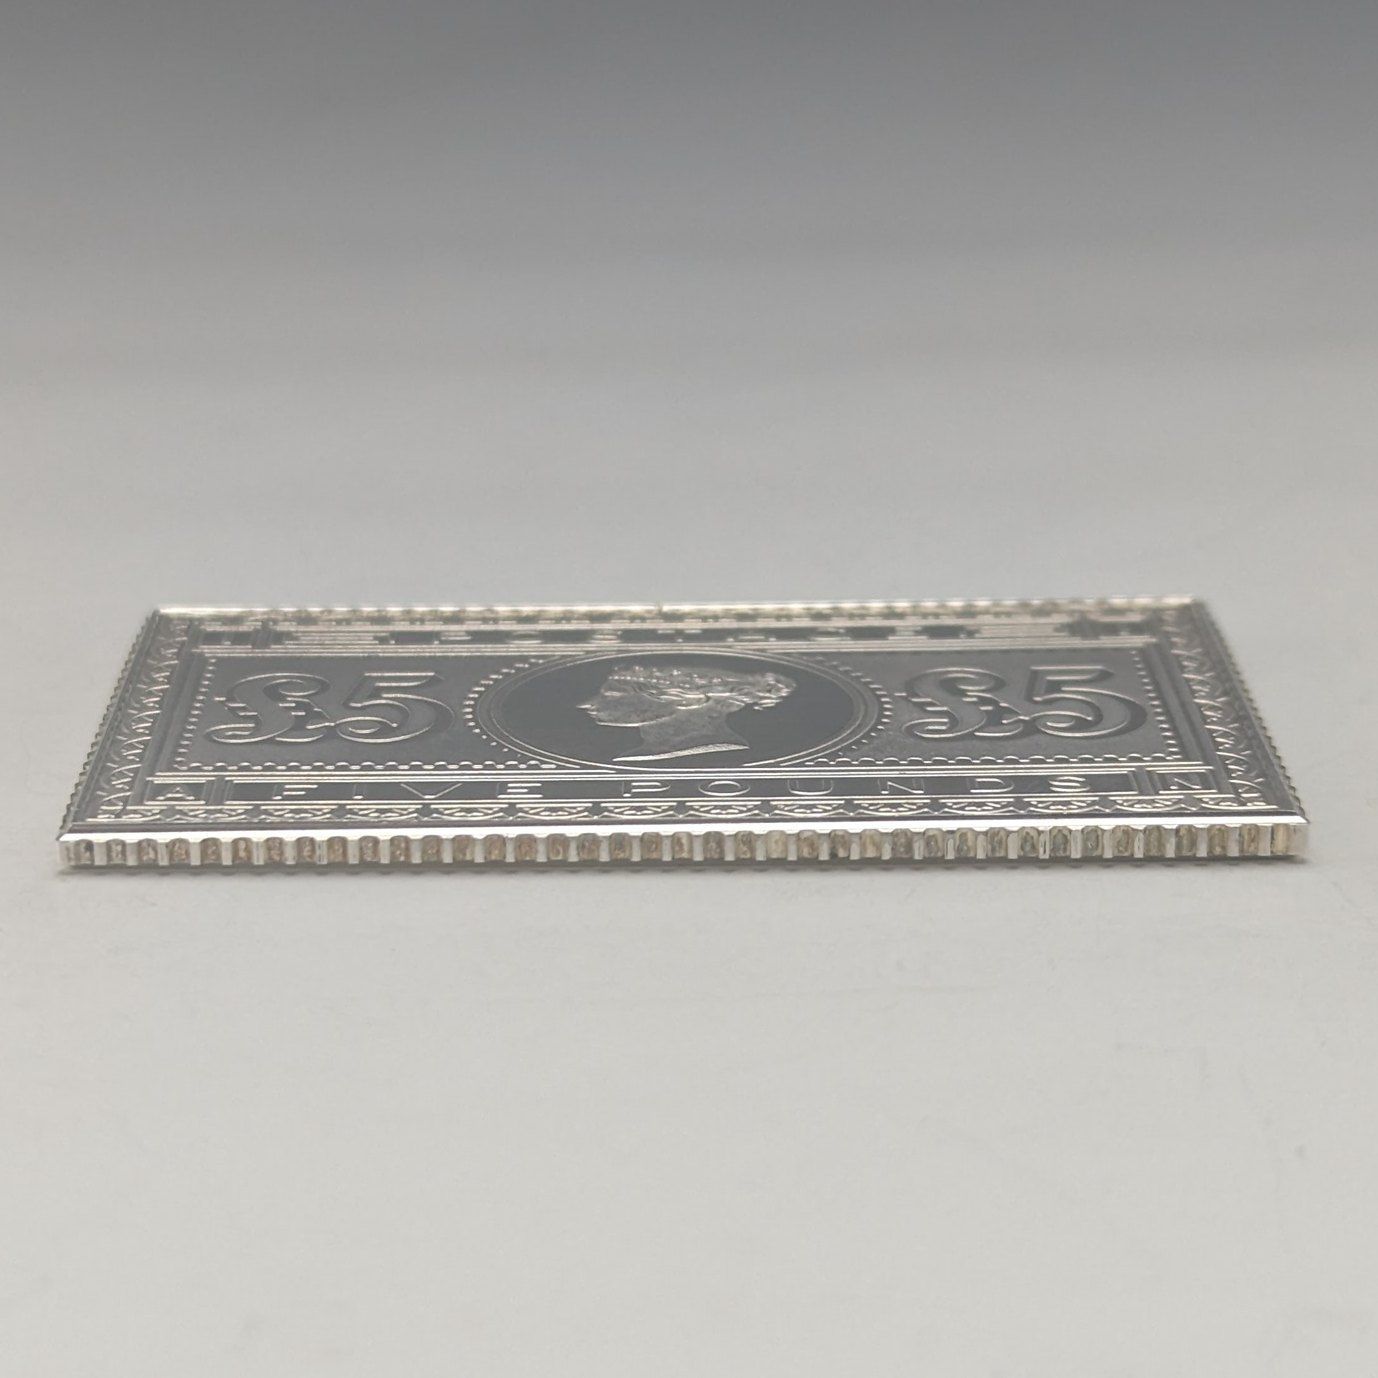 1977年 エリザベスⅡ世 戴冠25周年ジュビリー 純銀製 5ポンド切手 